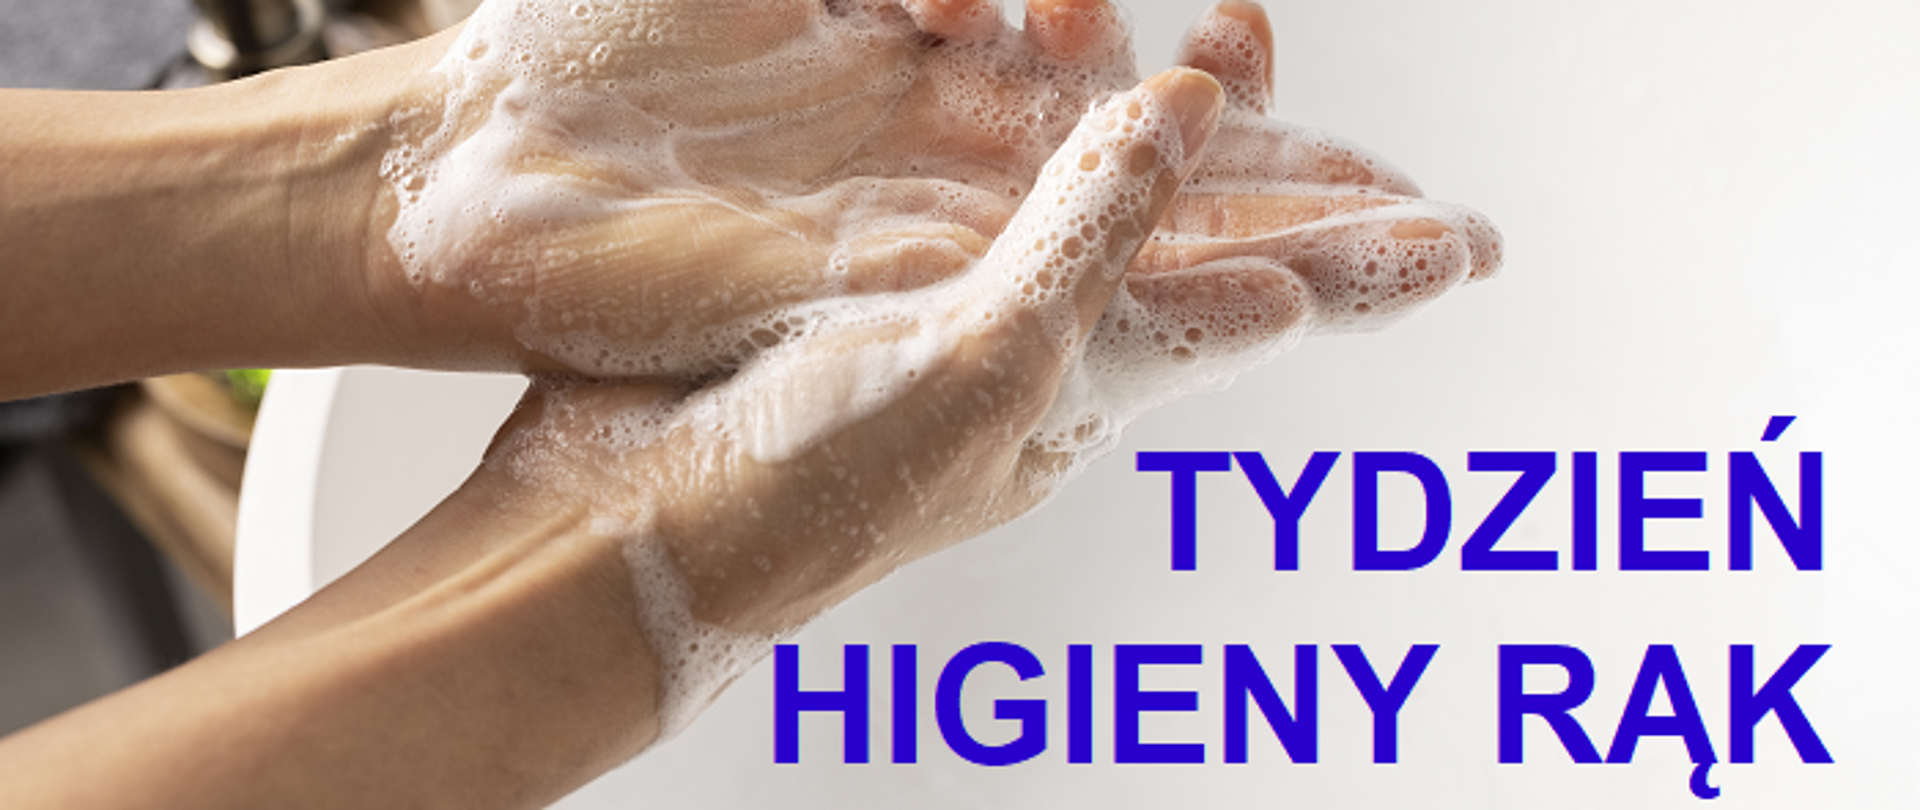 Tydzień higieny rąk